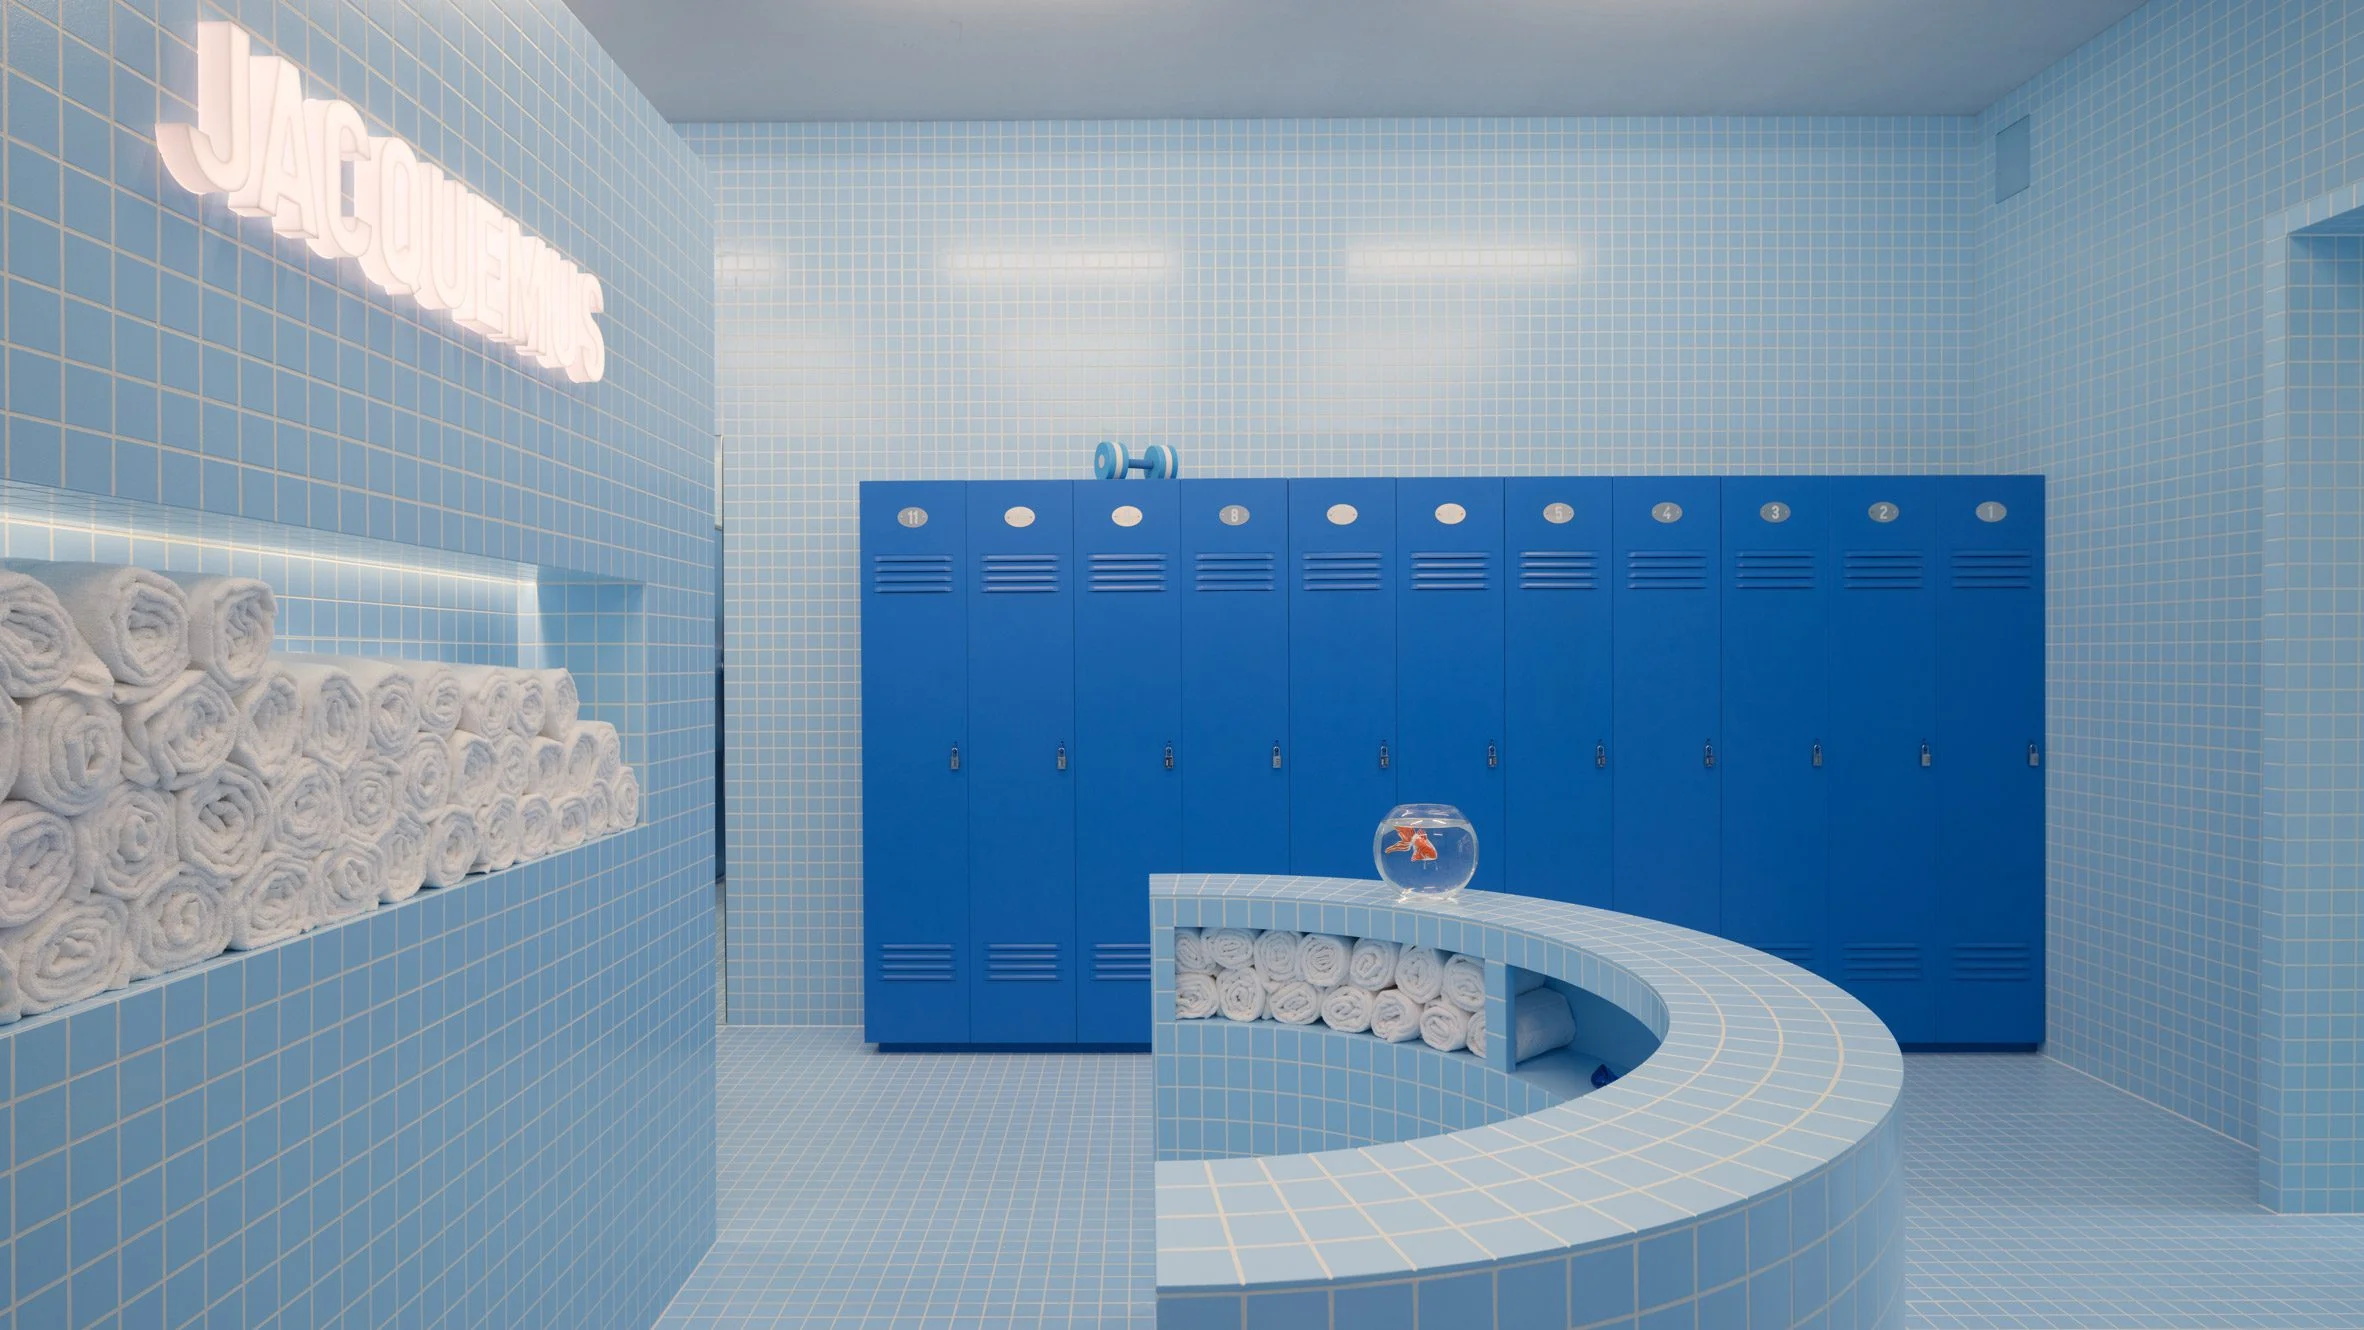 Jacquemus 为 Selfridges 快闪店创造了他自己的浴室的超现实主义诠释